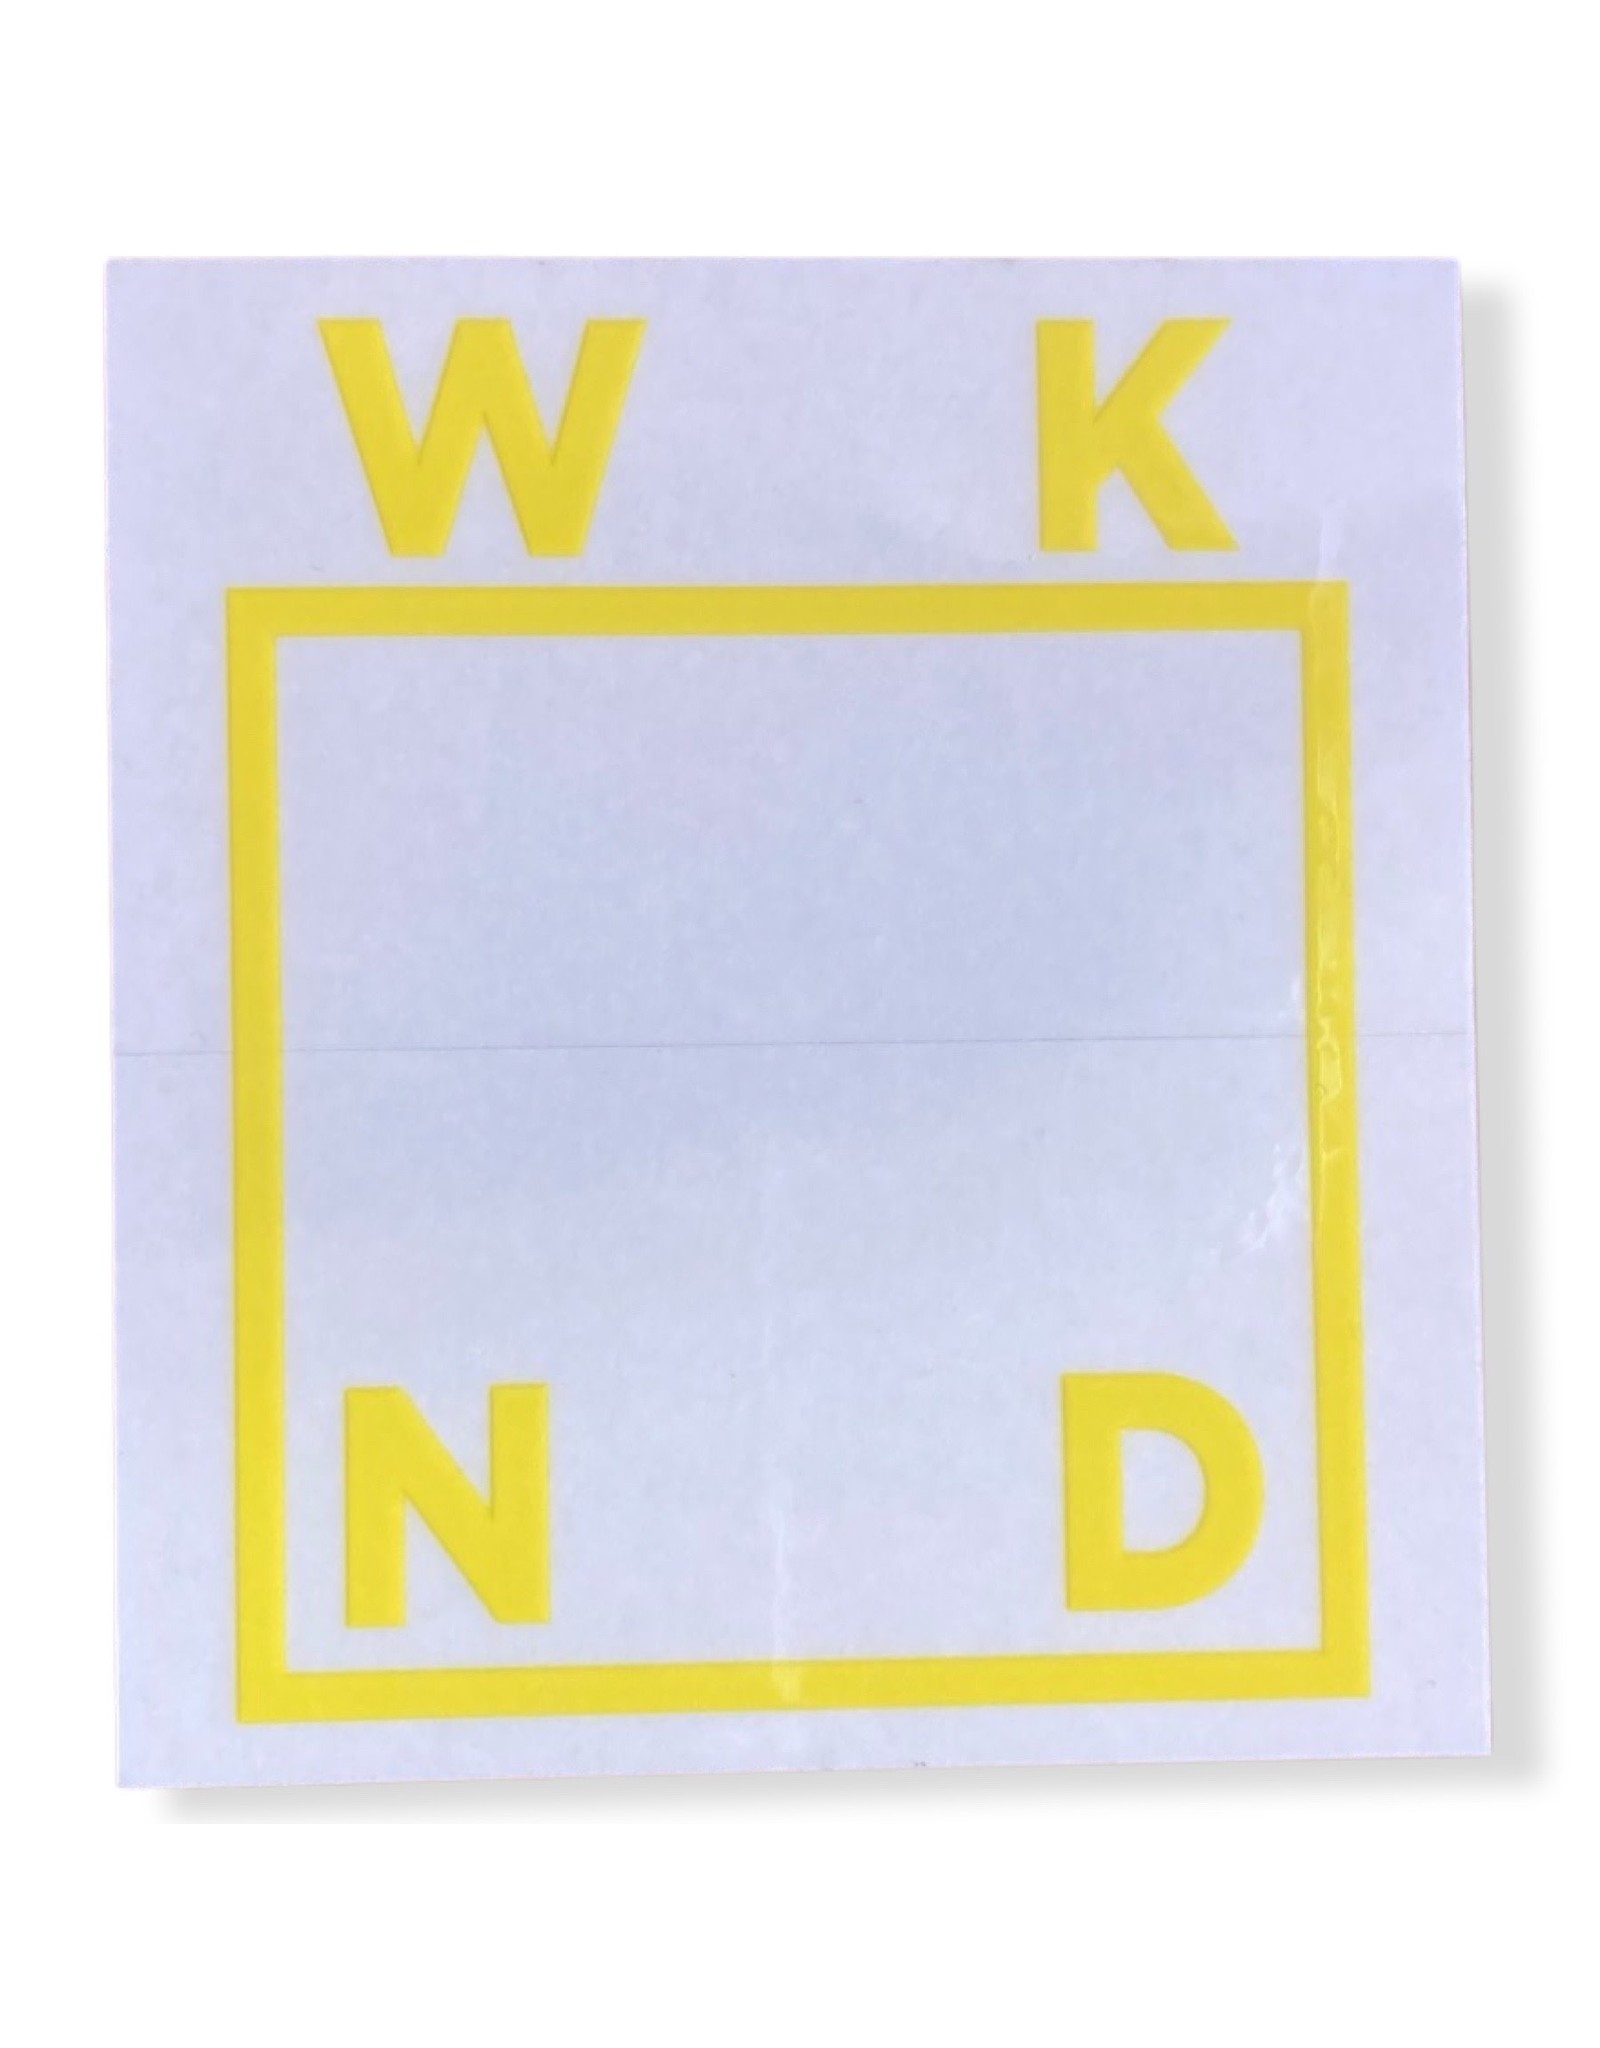 Wknd Skateboards Wknd Sticker Box Logo SP 23 (Yellow)